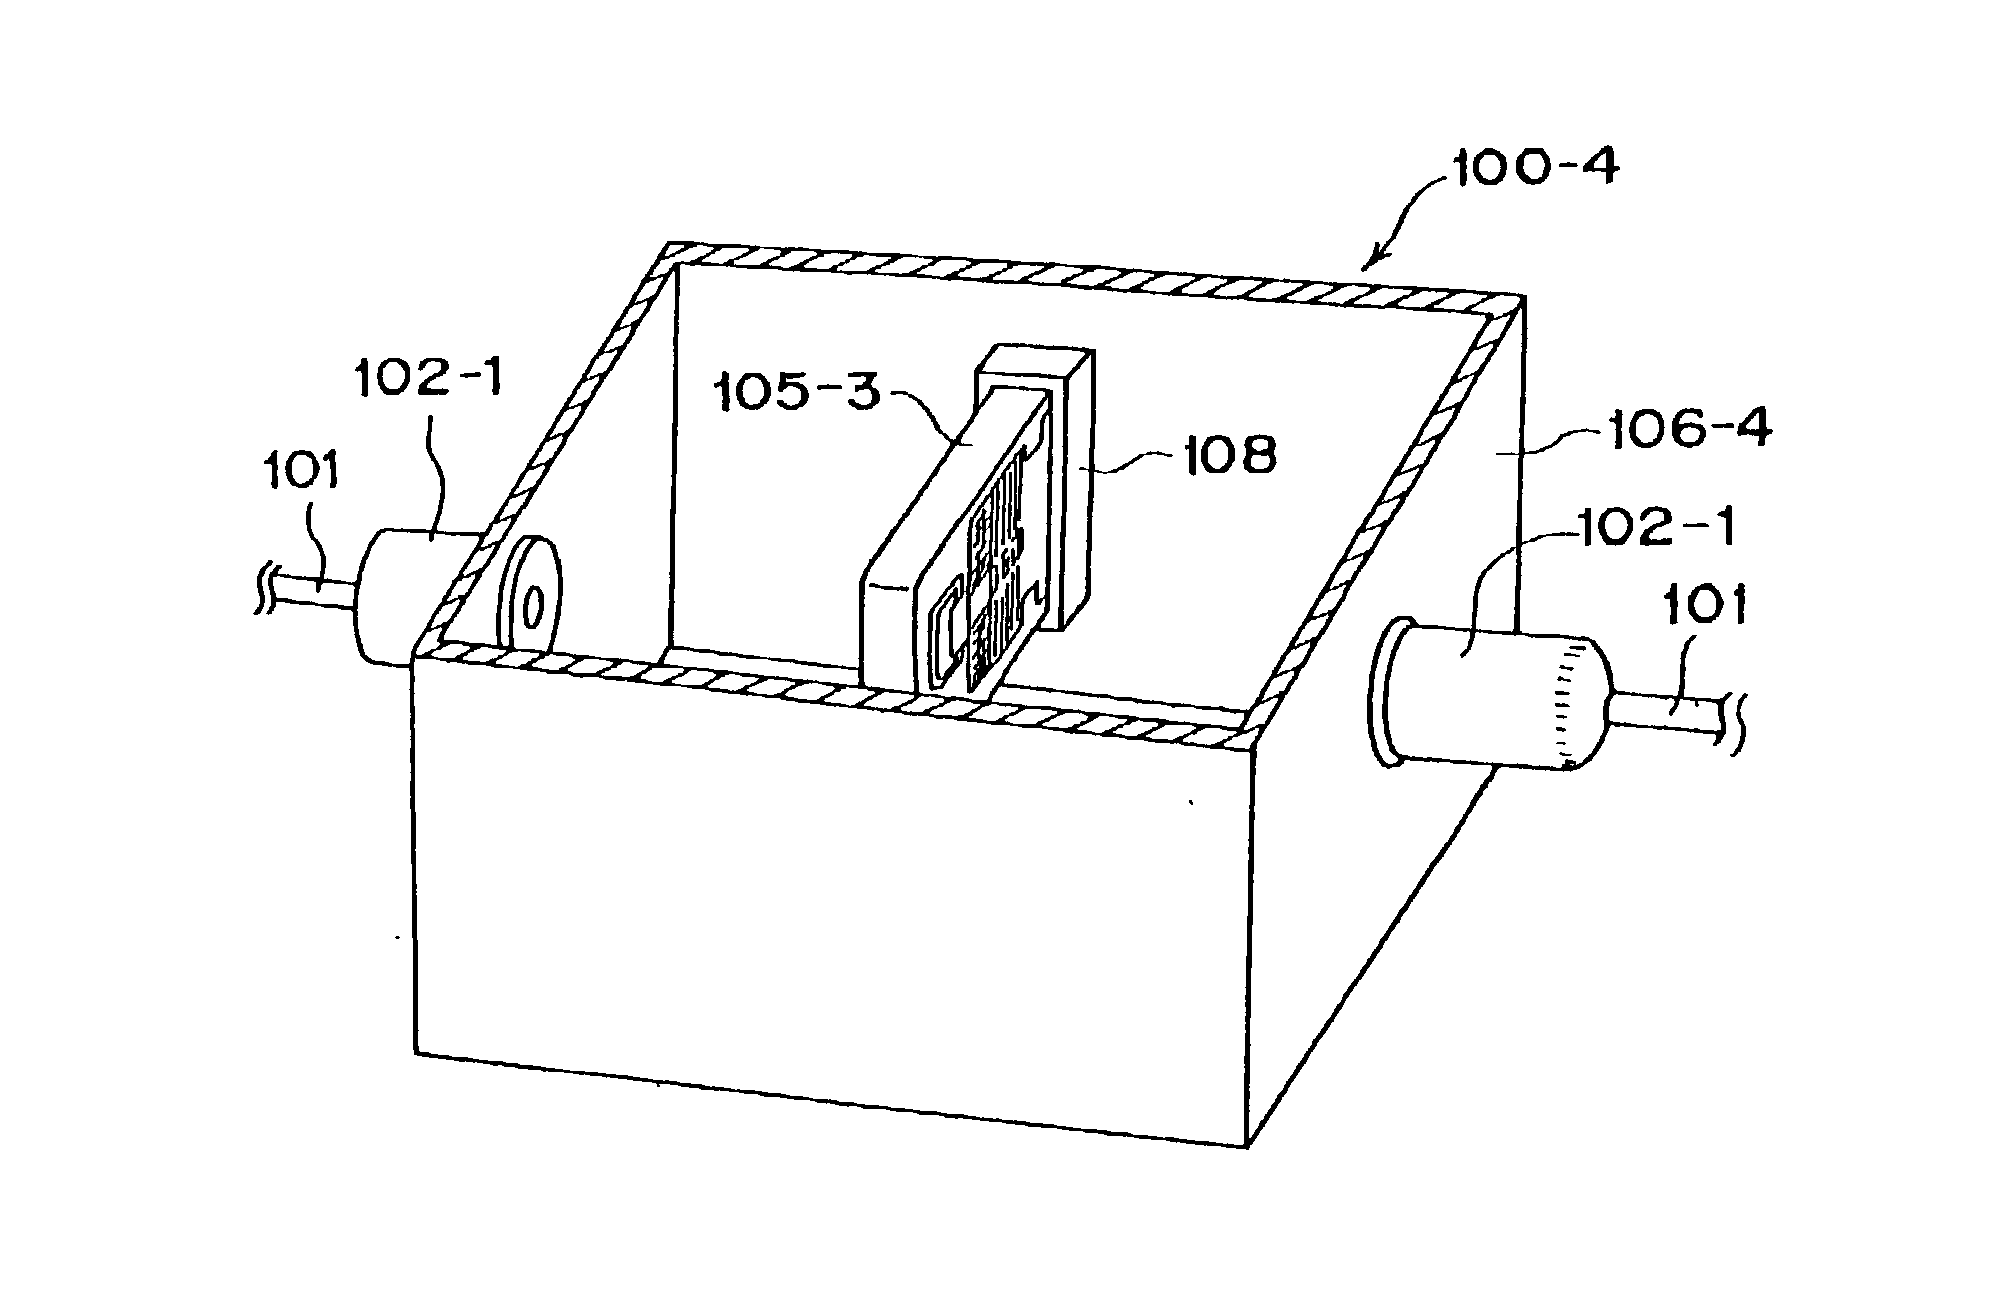 Functional optical module